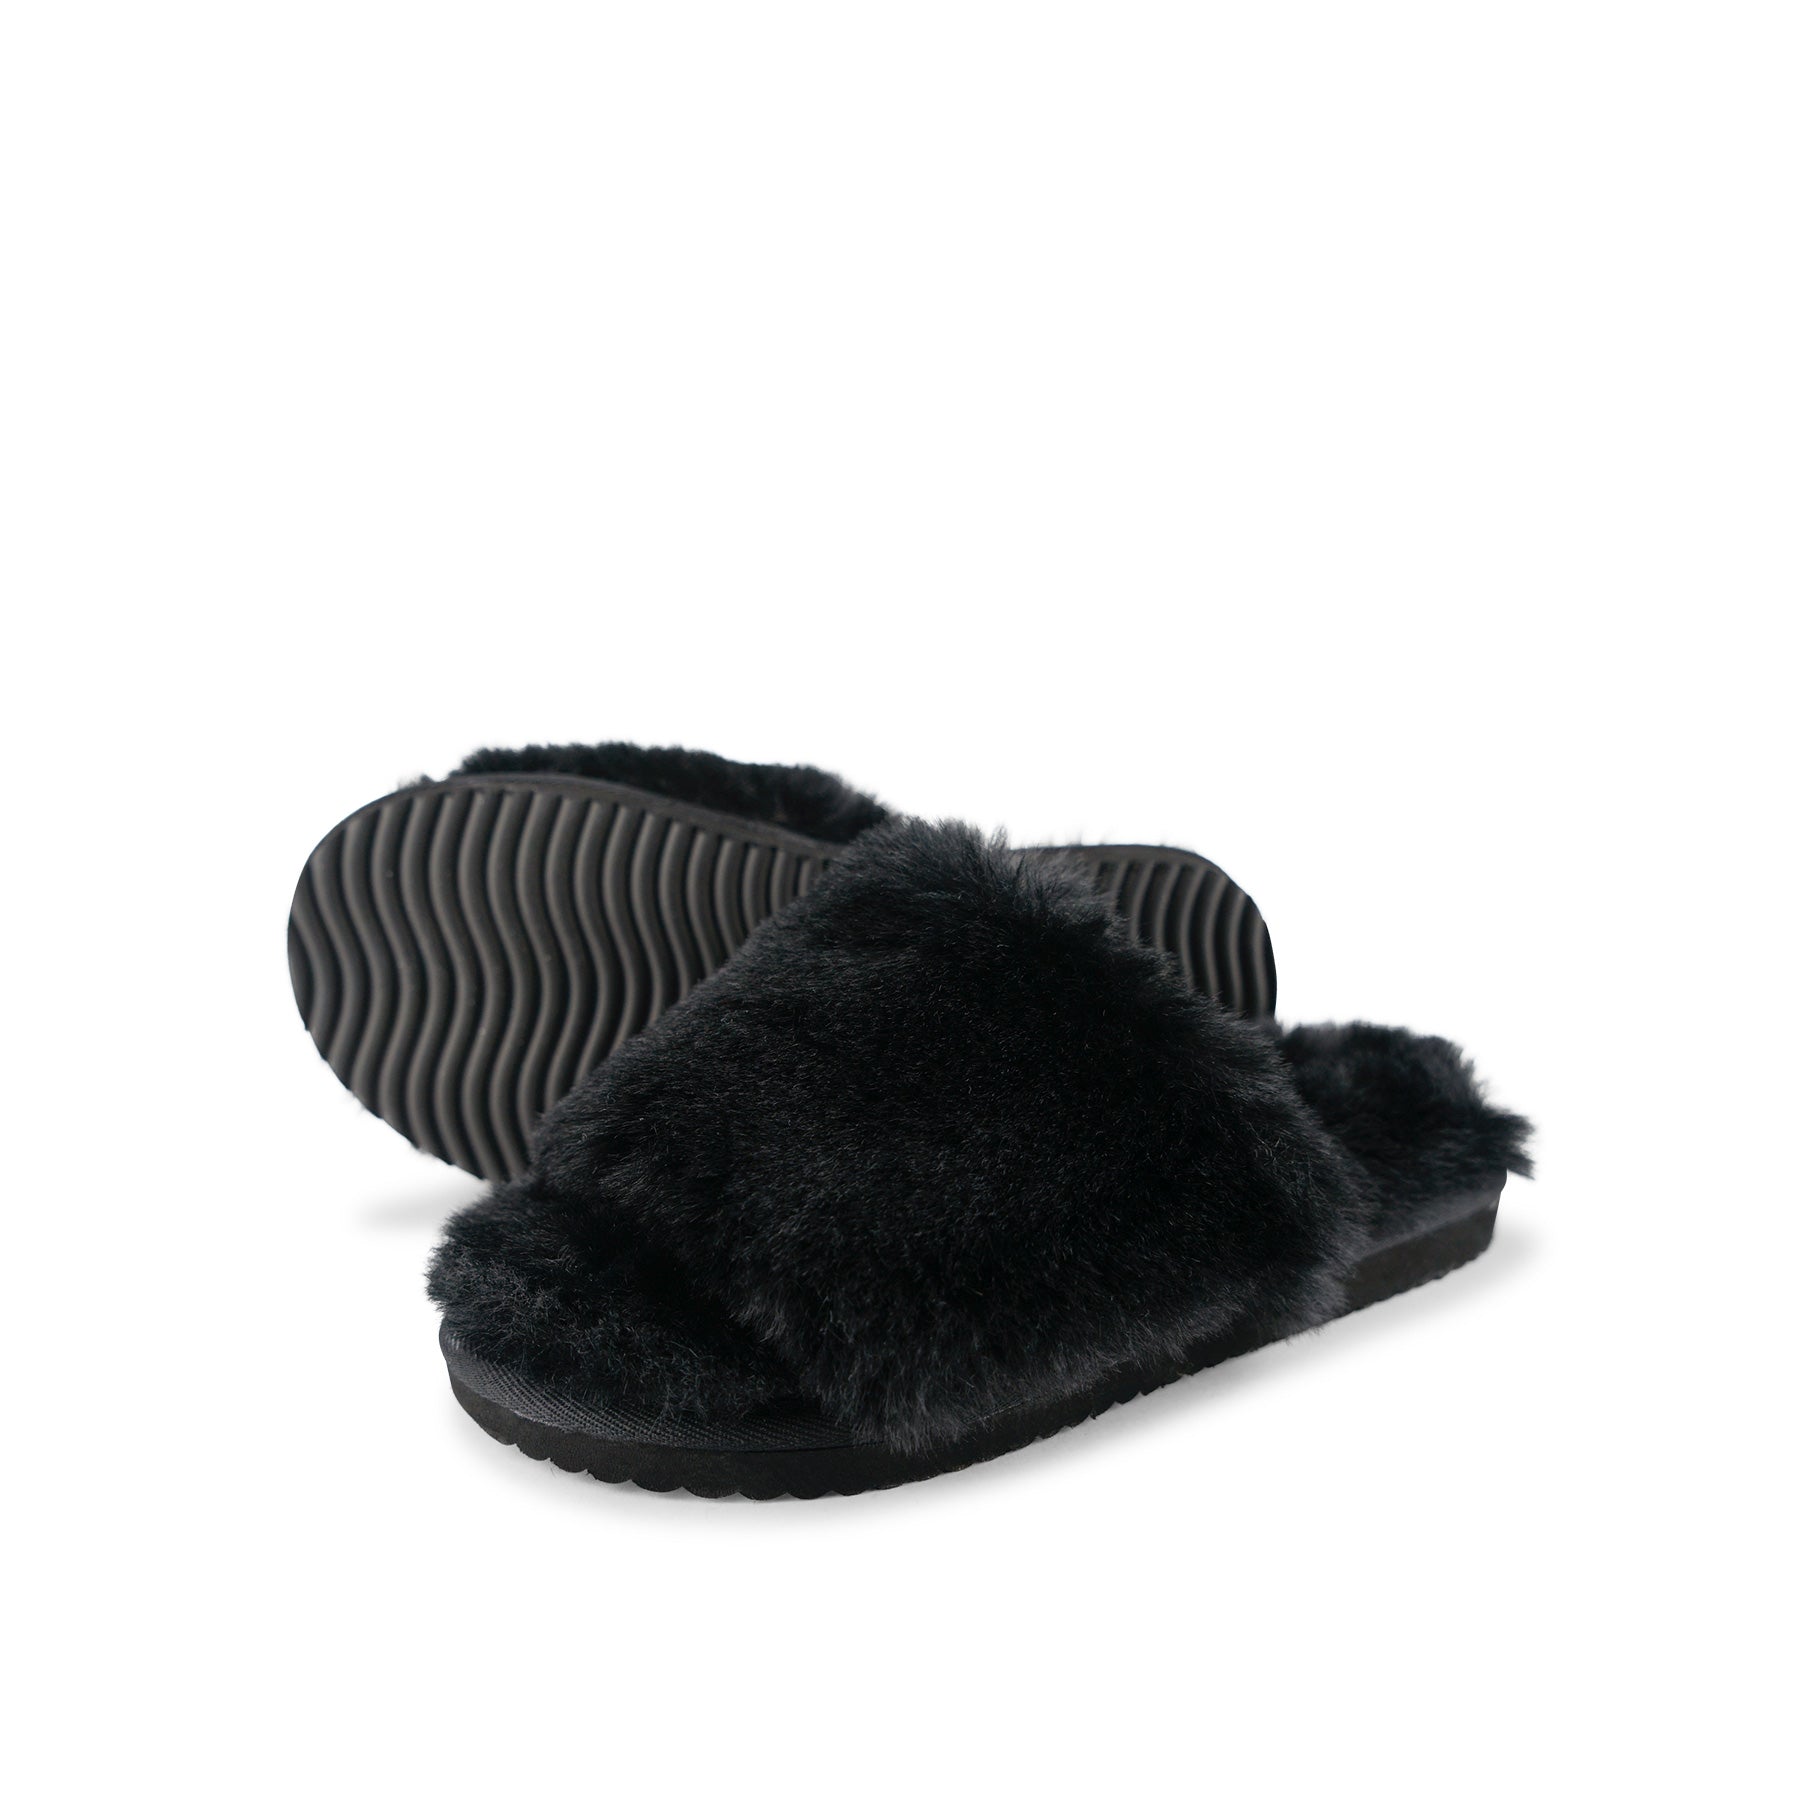 Flip Flop Slipper Fur in color black by Flip*Flop original